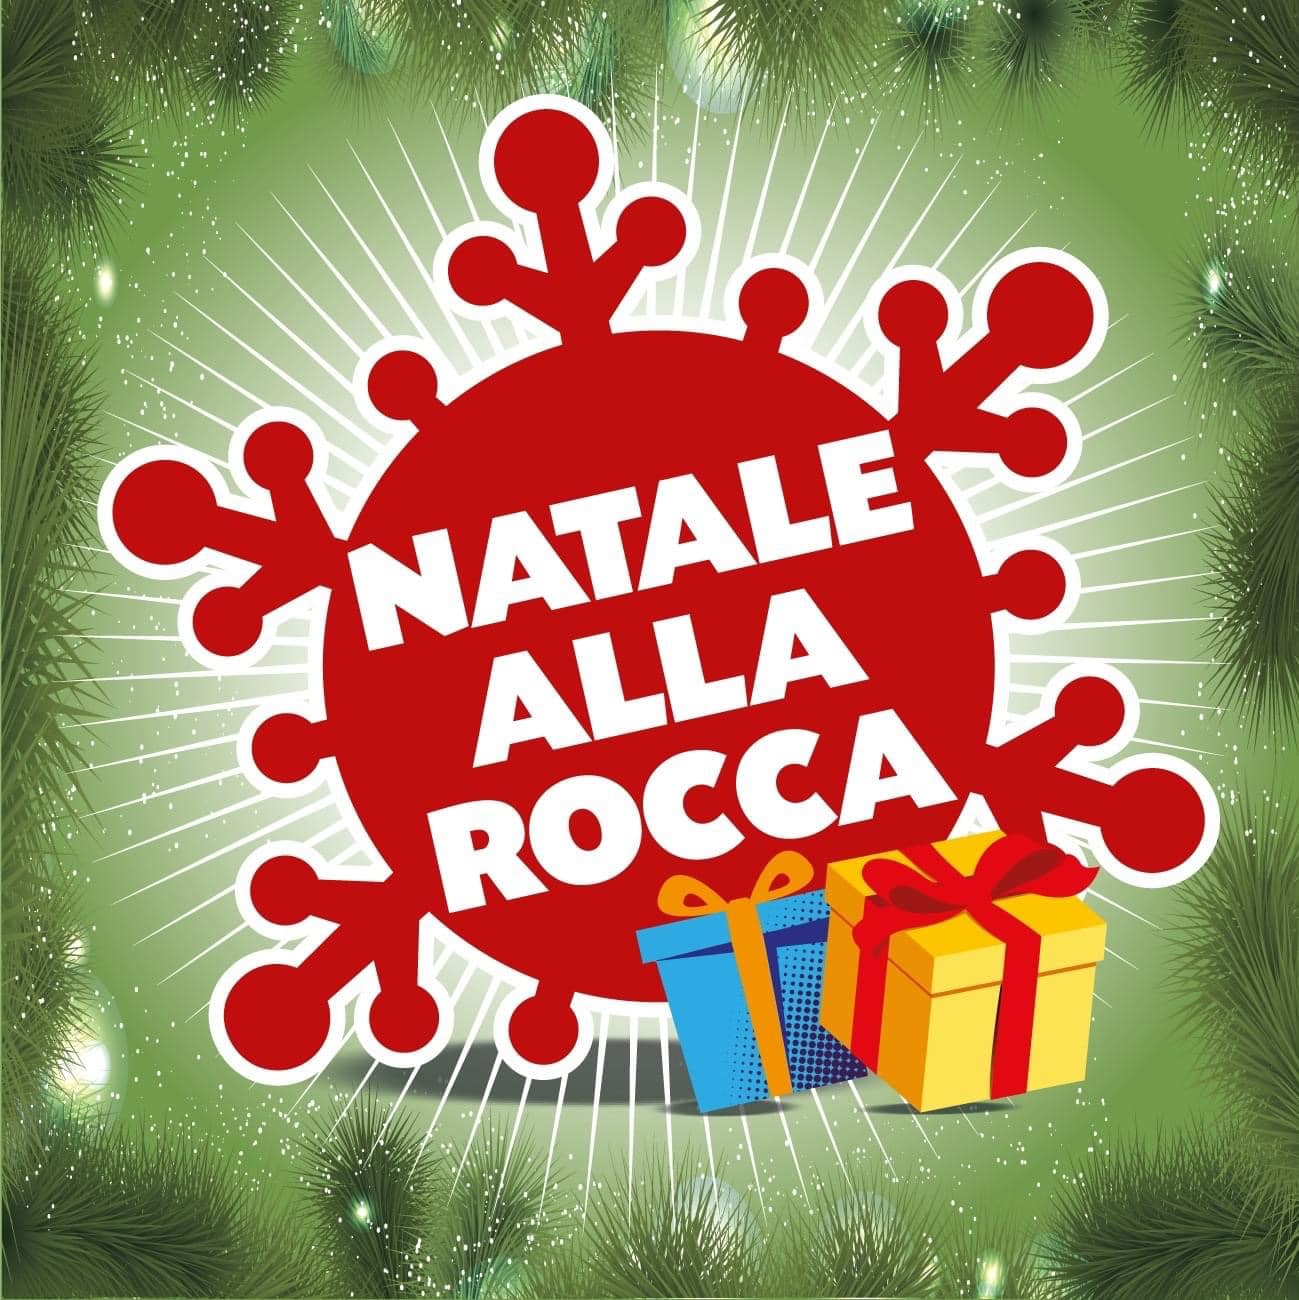 Al Cerp fino all’8 gennaio “Natale alla Rocca”